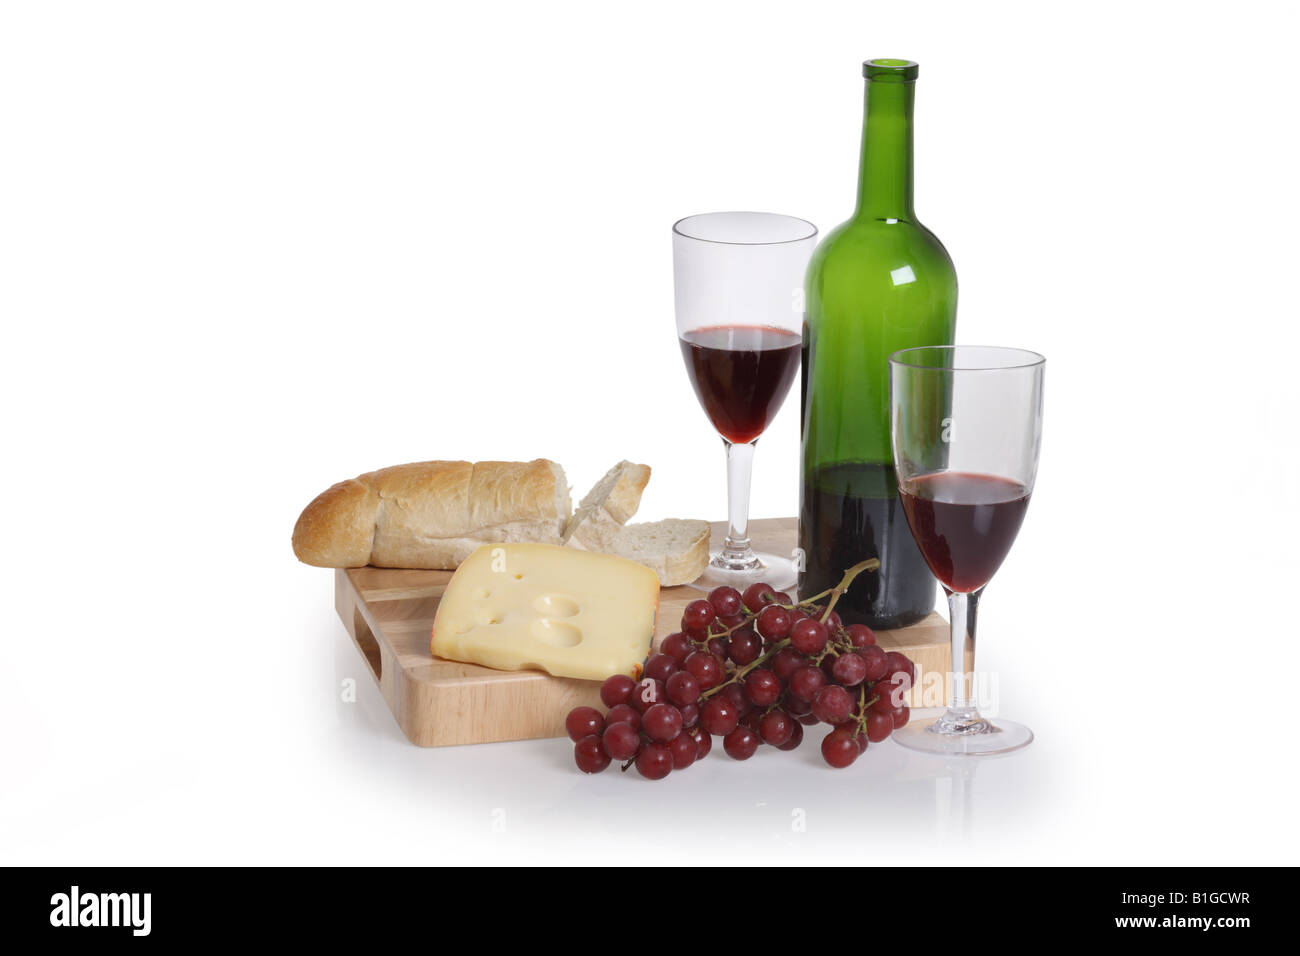 Flasche Rot Wein zwei Gläser Trauben Käse und Brot schneiden Sie auf weißem Hintergrund Stockfoto